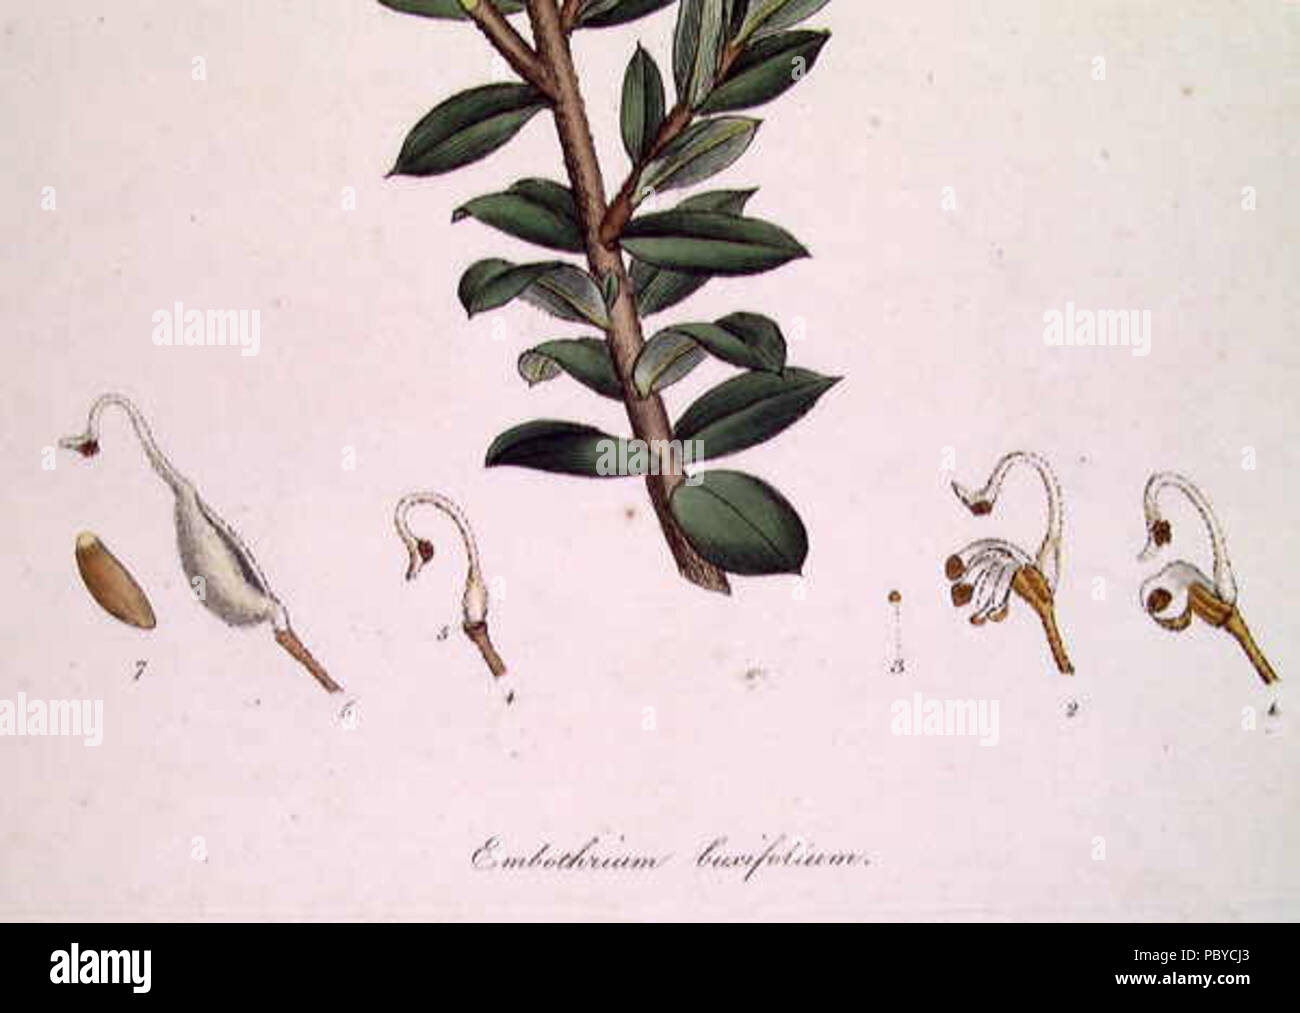 185 Embothrium (Grevillea) buxifolium-detail Stock Photo